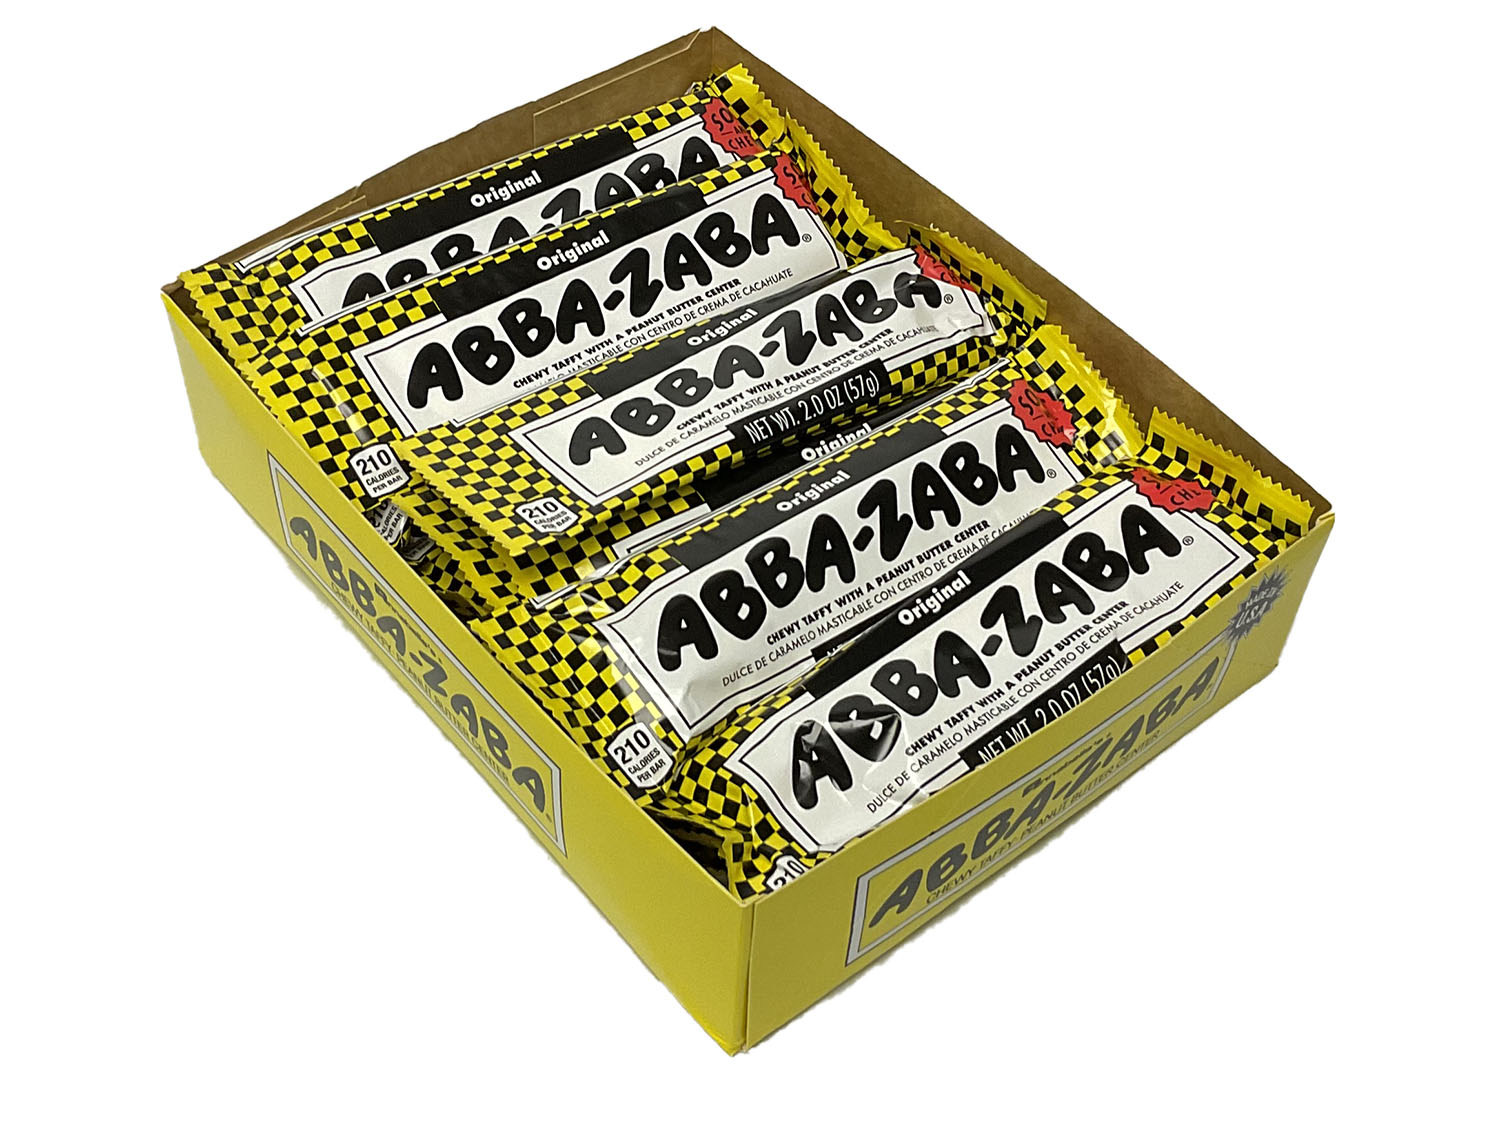 Abba Zaba - 1.8 oz bar - box of 24 open